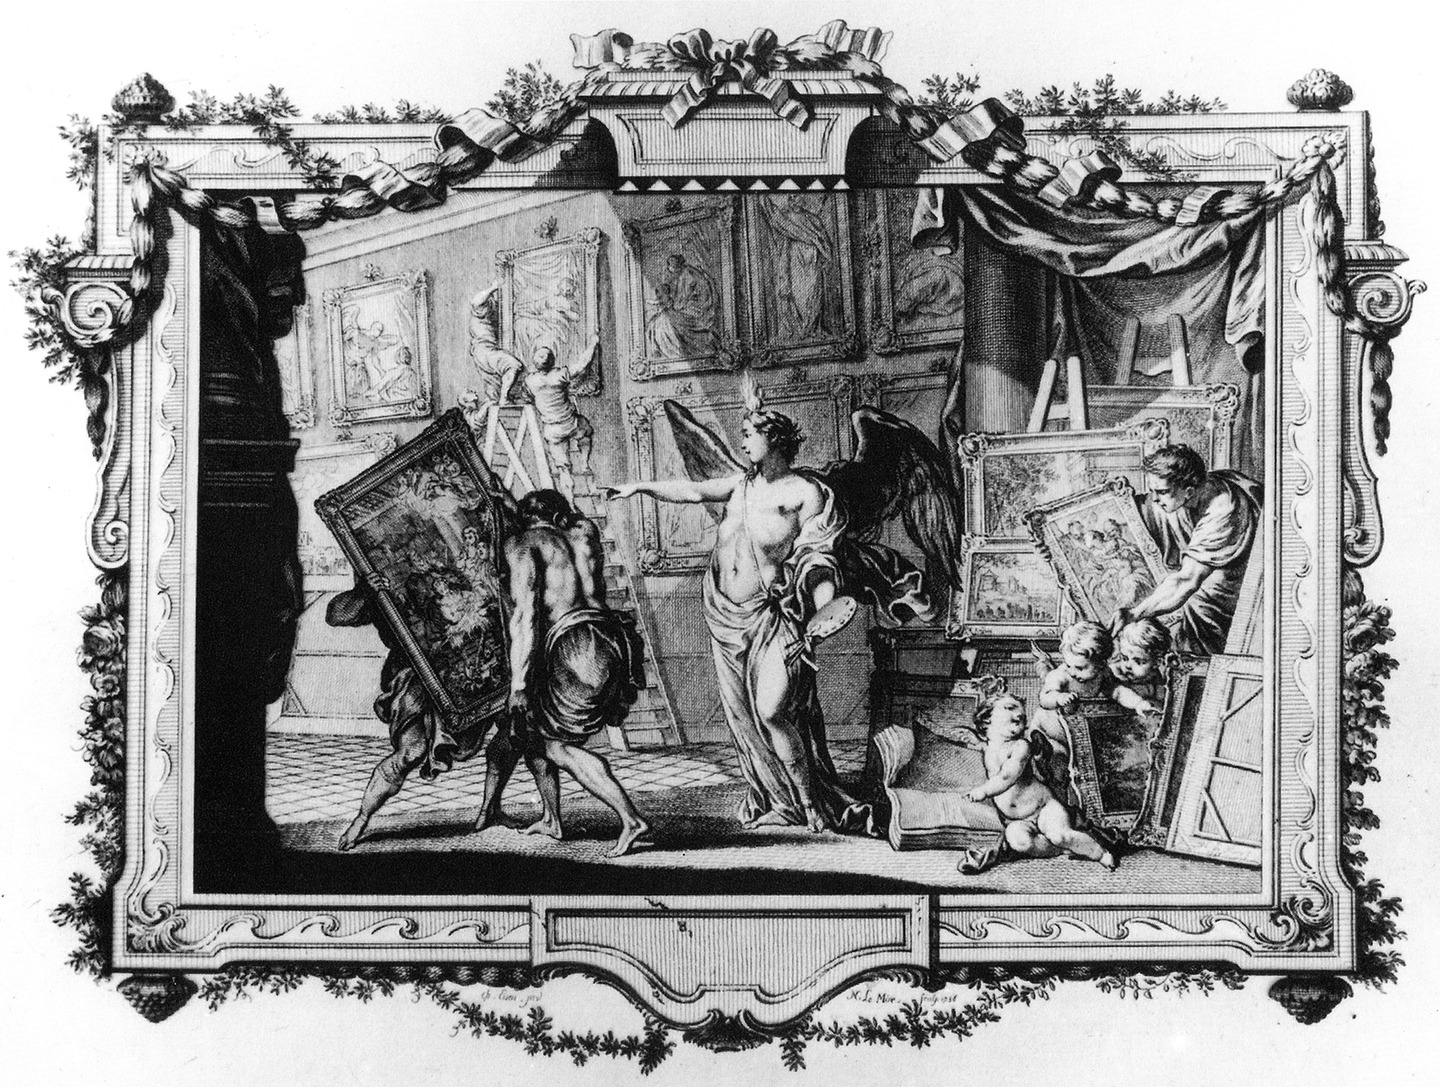 Carl Heinrich von Heinecken, Recueil d’estampes, Dresden 1757, Band 2, Frontispiz.